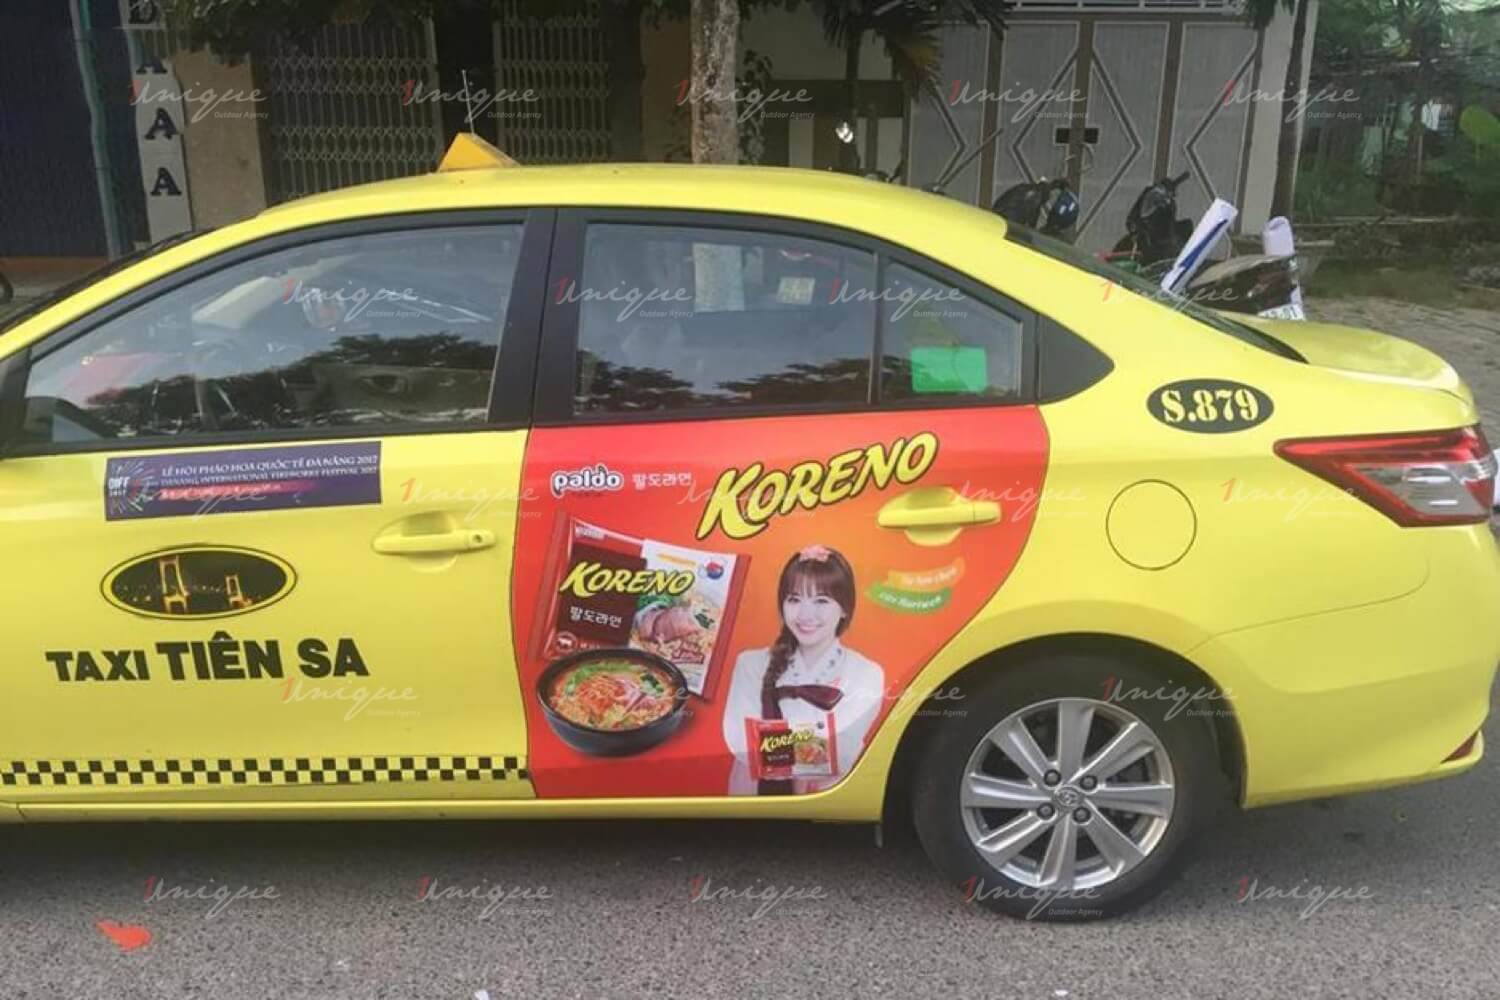 Chiến dịch quảng cáo trên taxi của Koreno tại nhiều tỉnh thành